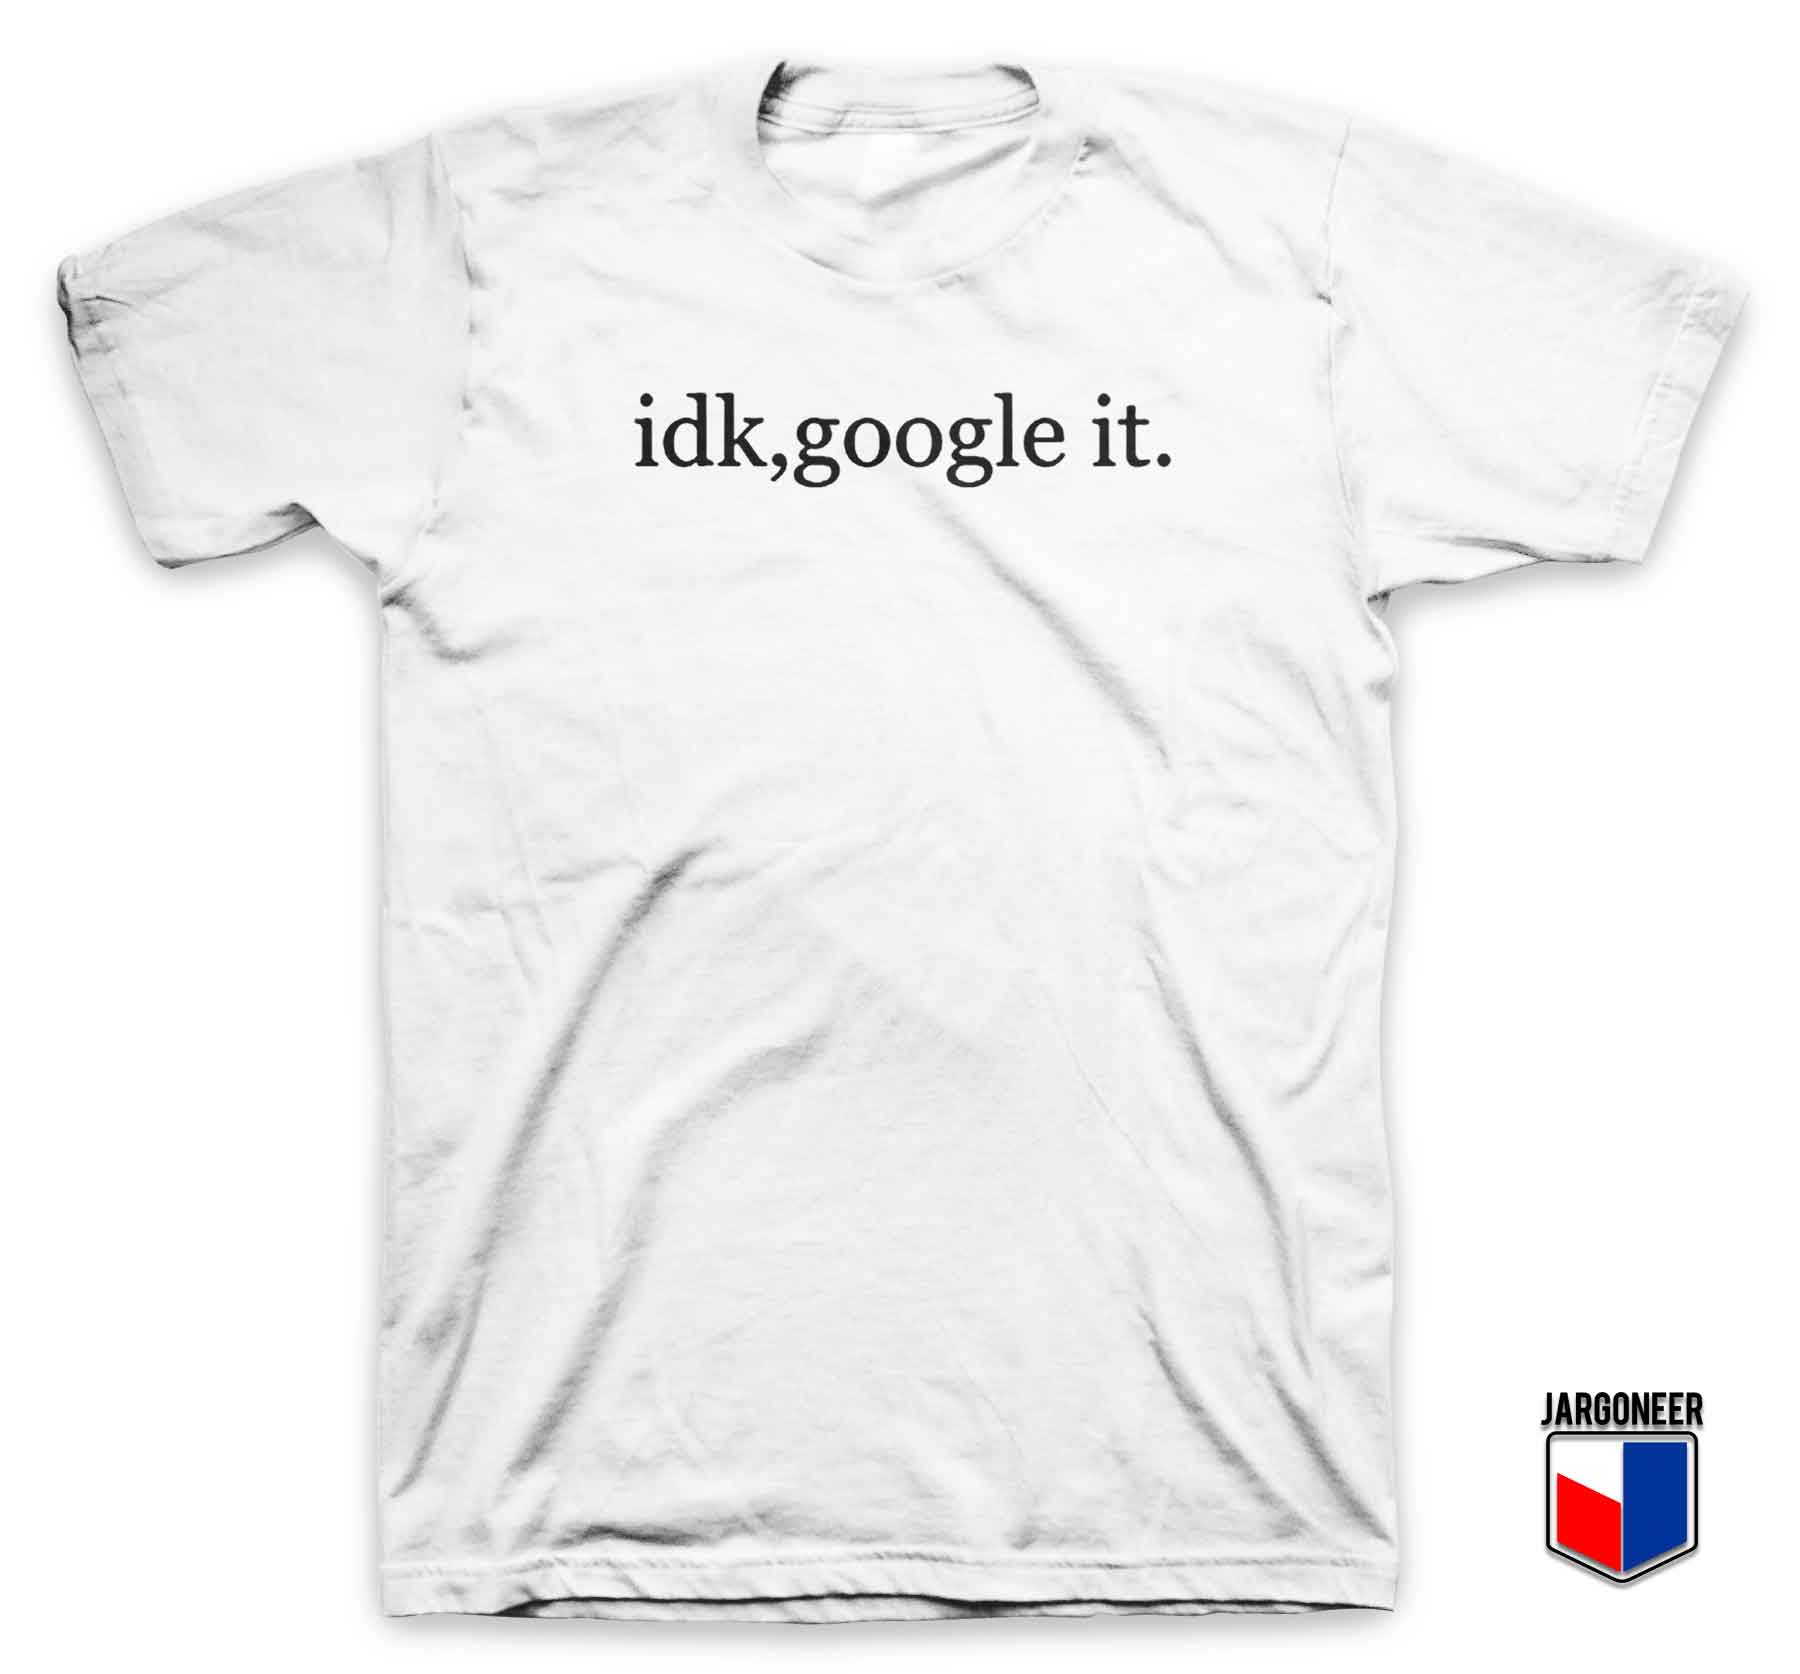 IDK Google It - Shop Unique Graphic Cool Shirt Designs